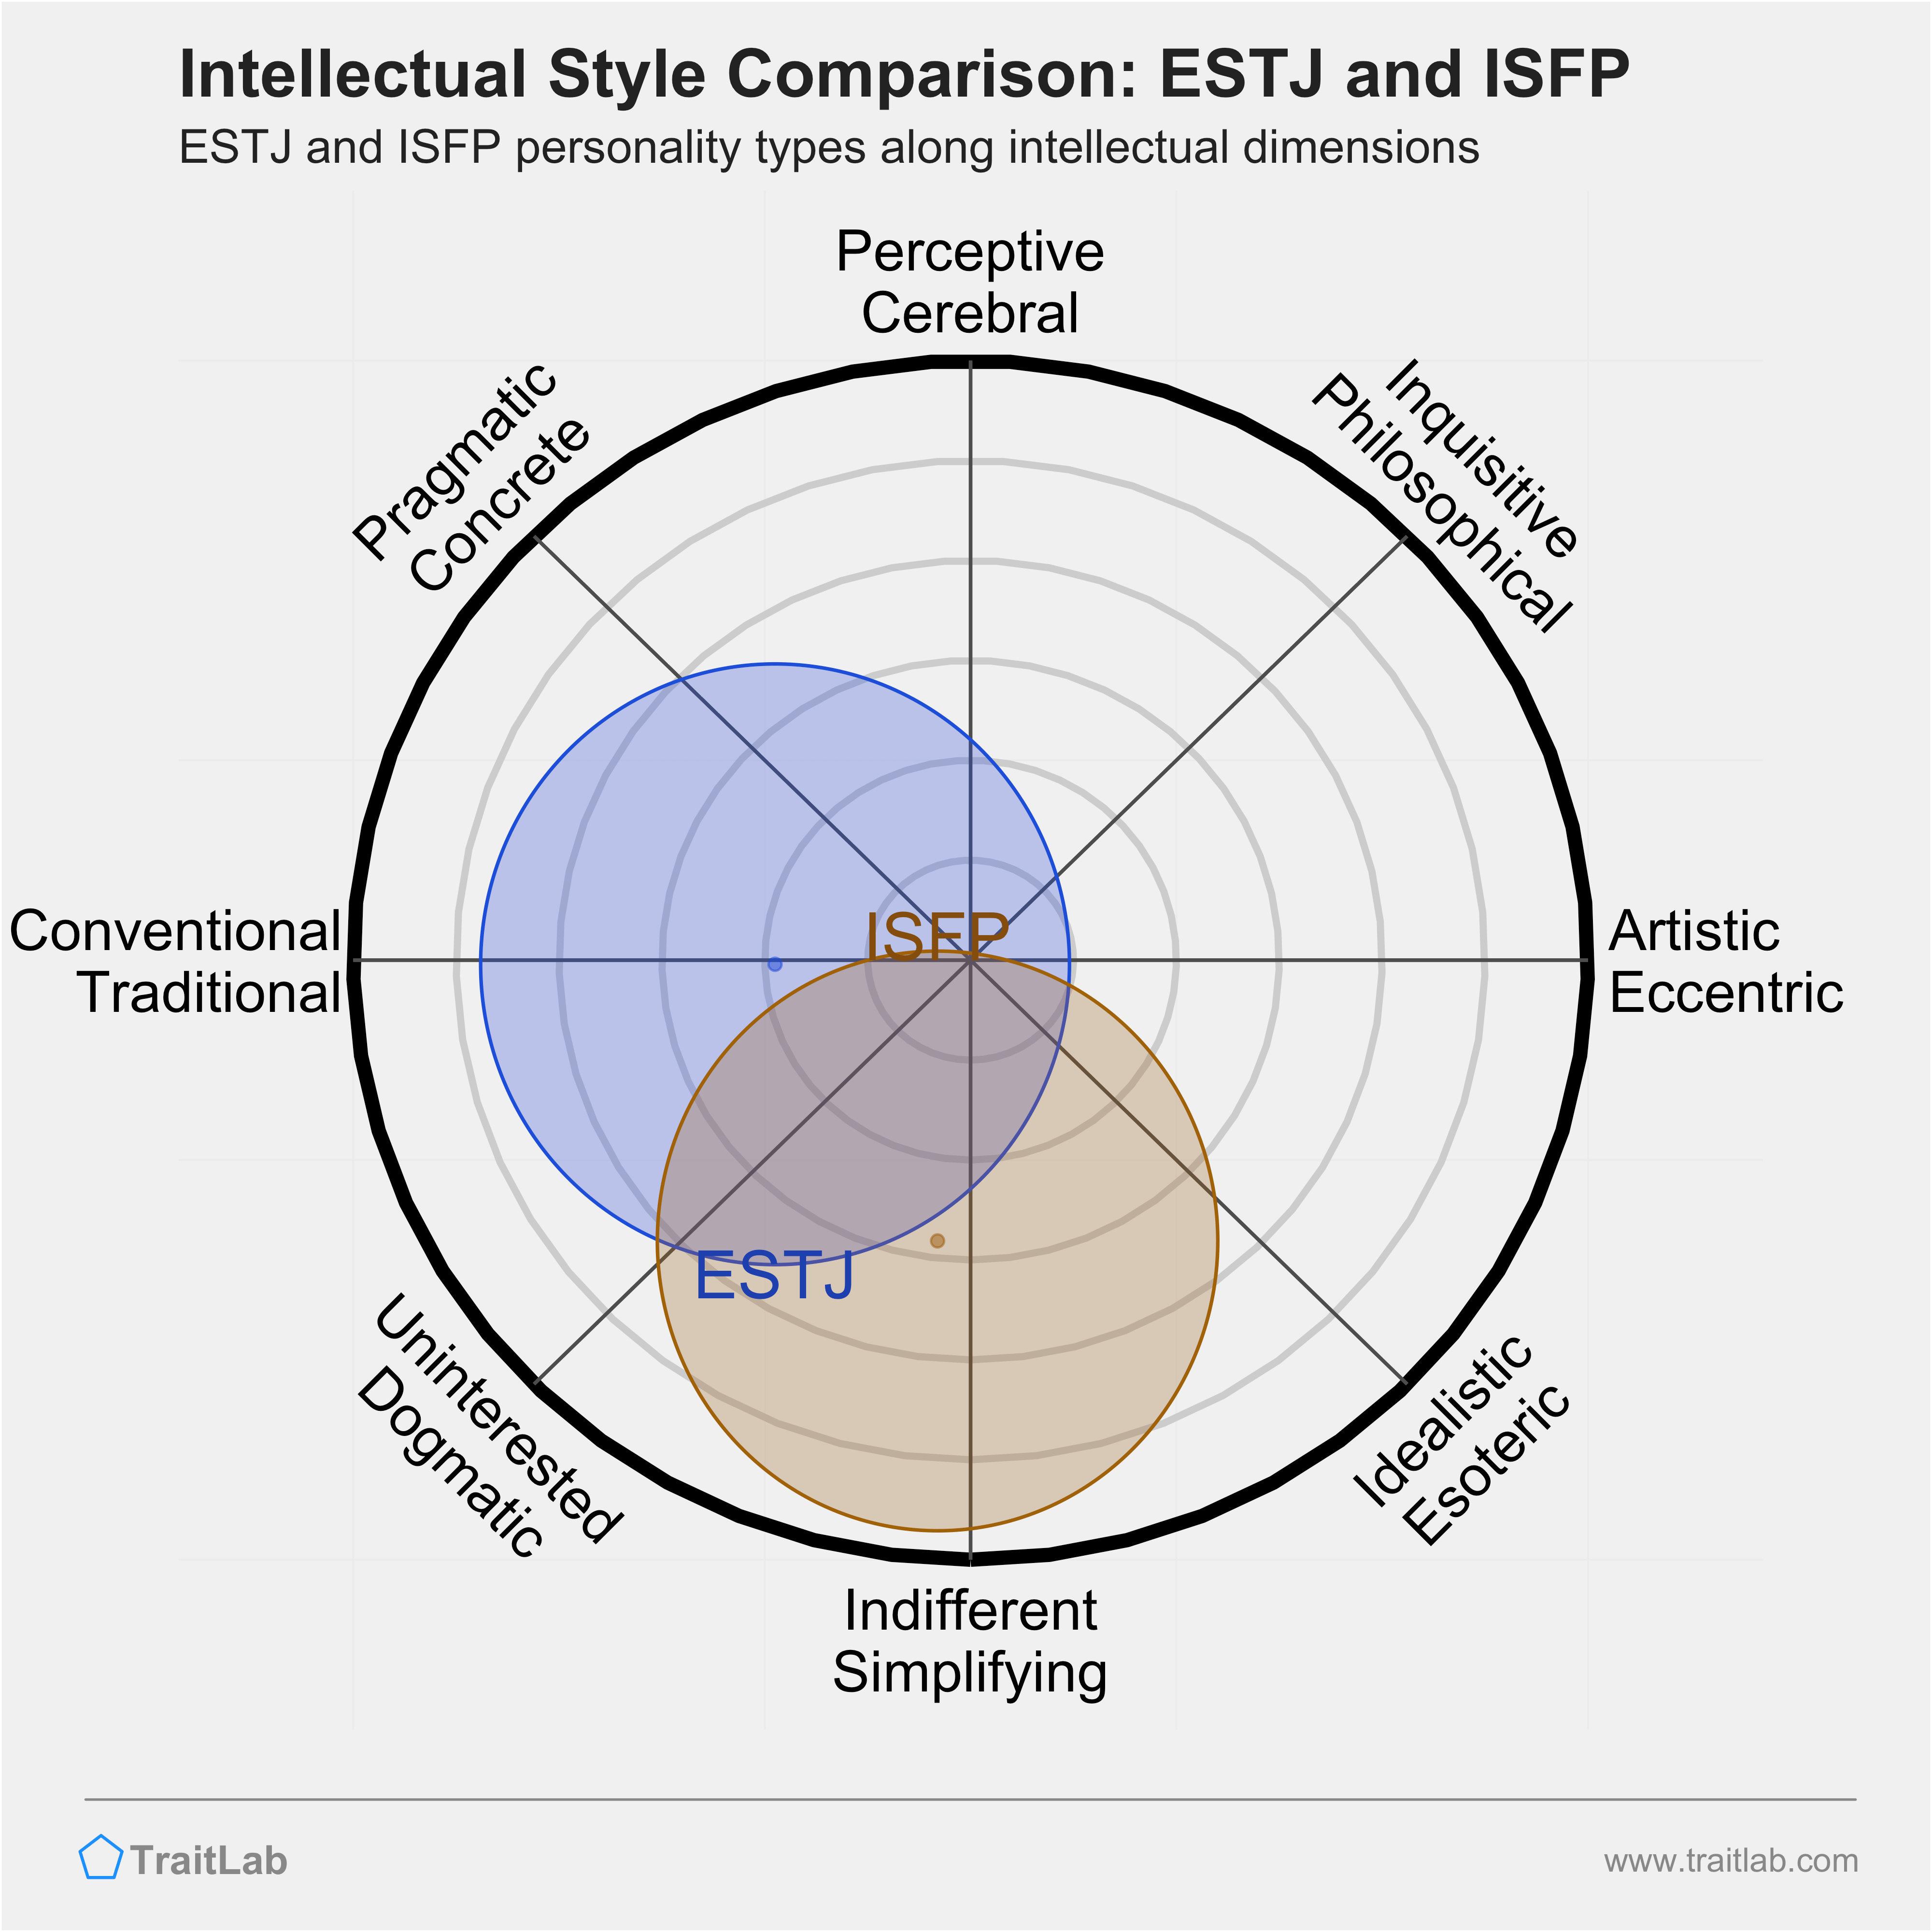 ESTJ and ISFP comparison across intellectual dimensions